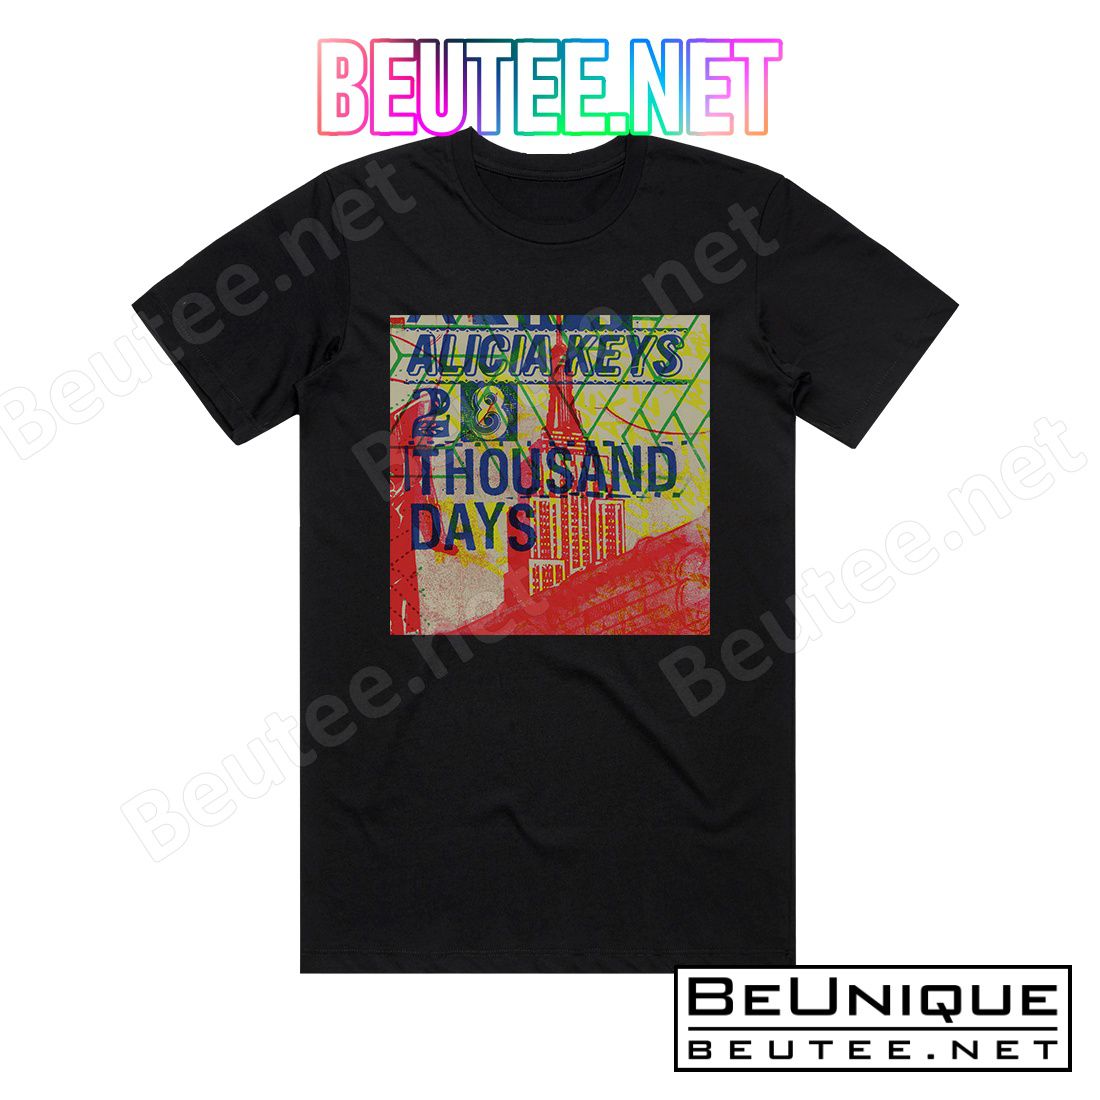 Alicia Keys 28 Thousand Days Album Cover T-Shirt